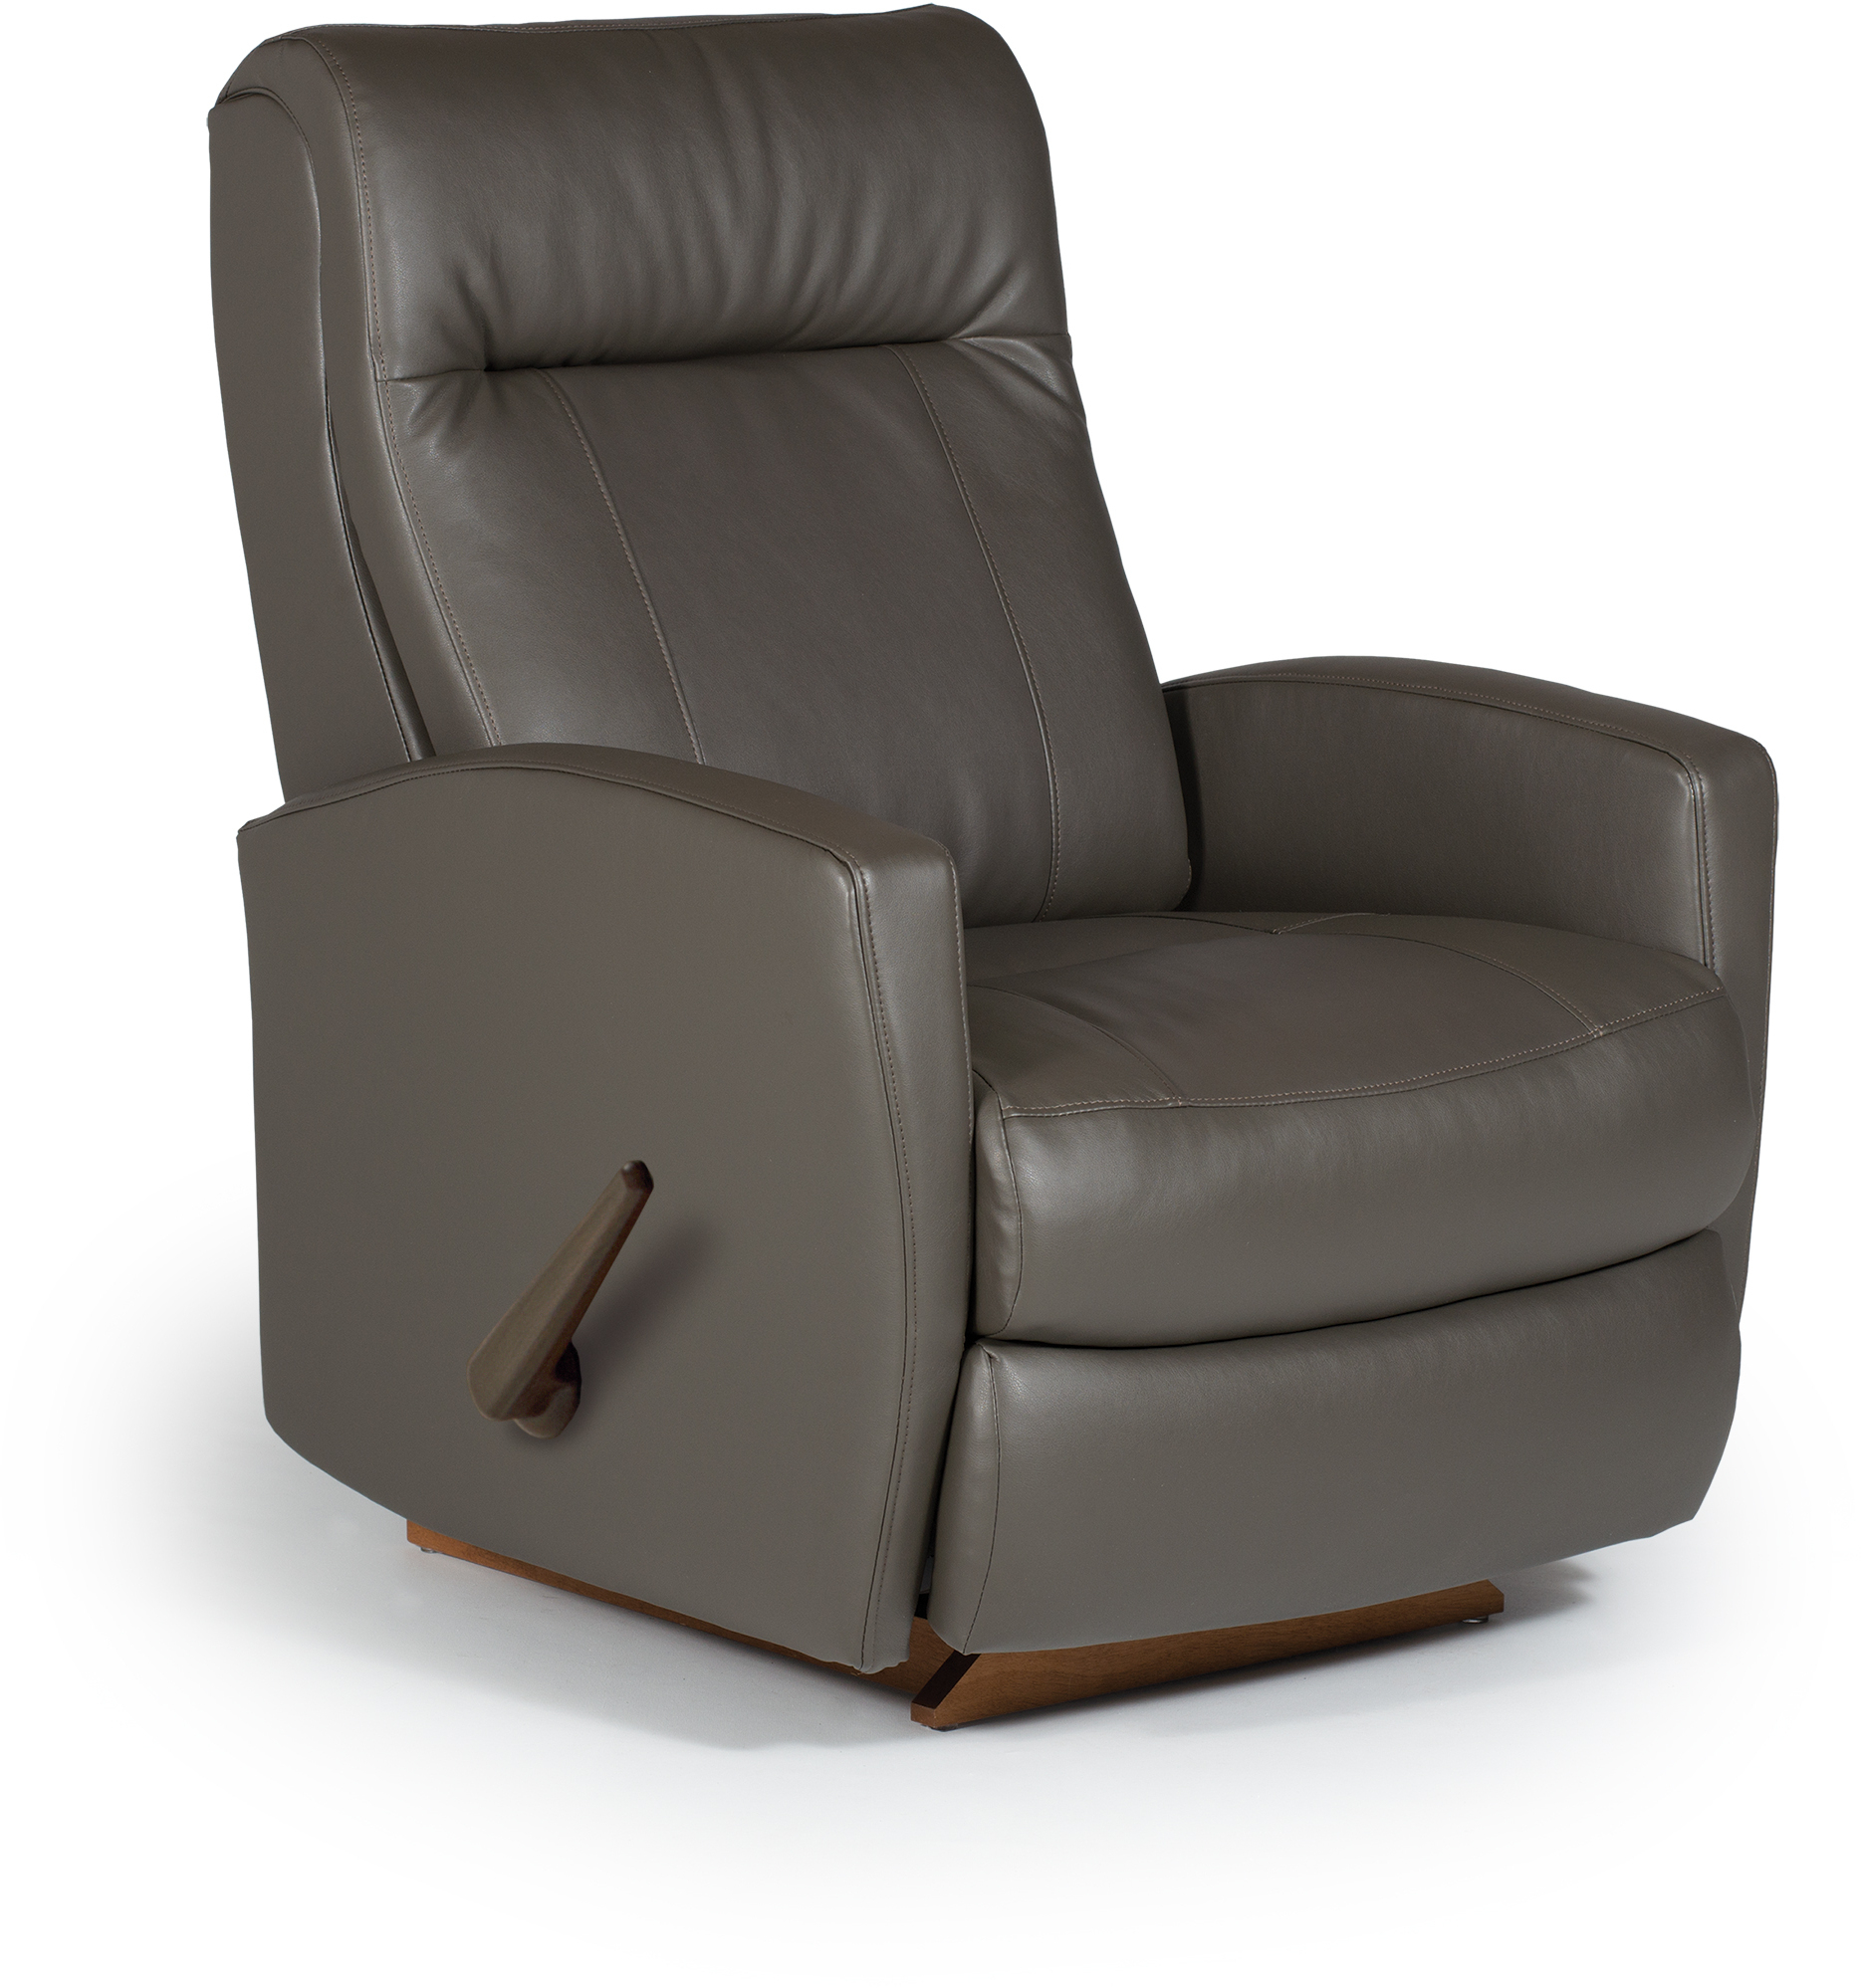 Leather glider rocker recliner 19